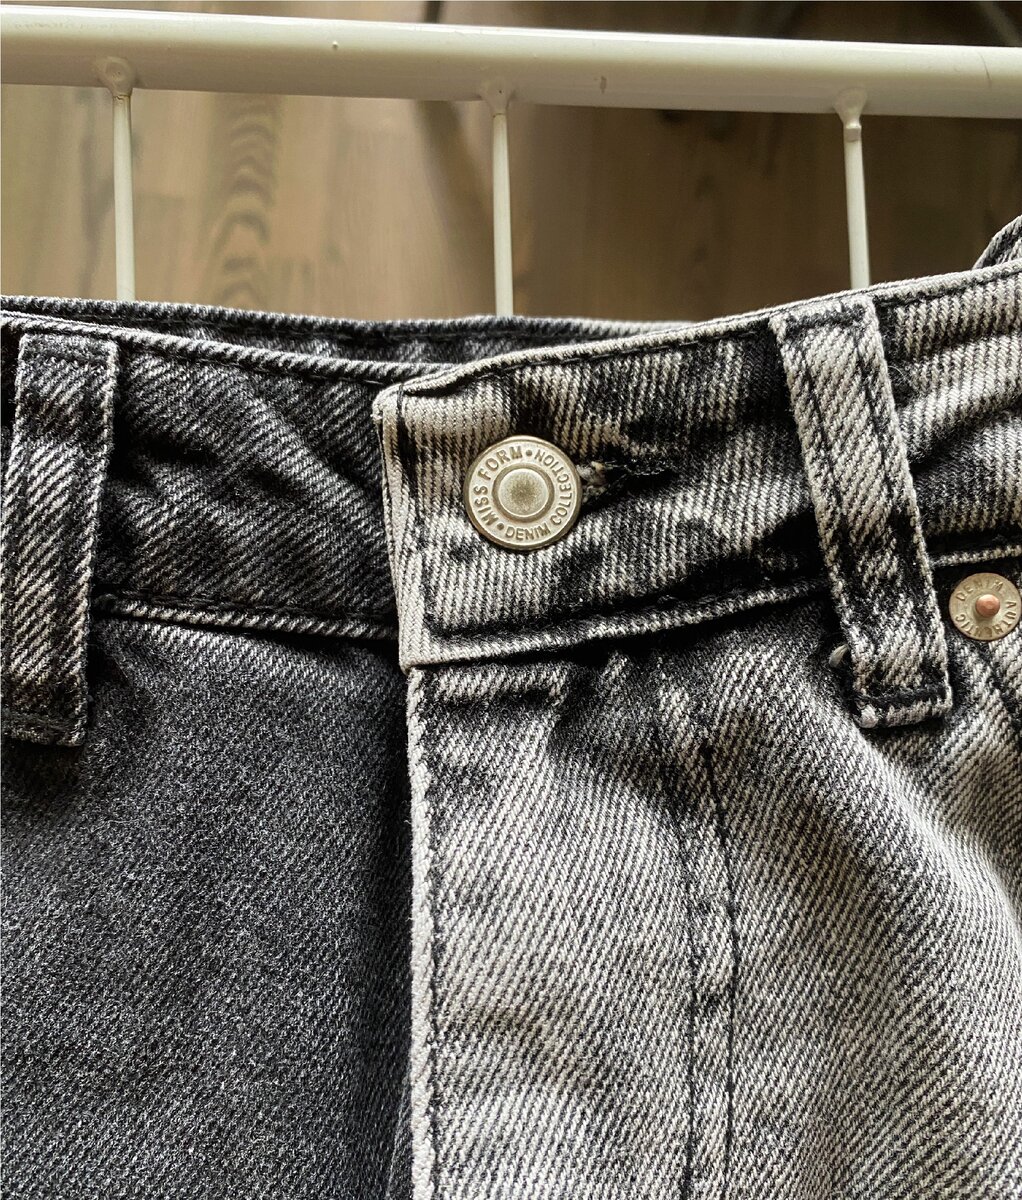 Как растянуть джинсы в длину или ширину - мой опыт